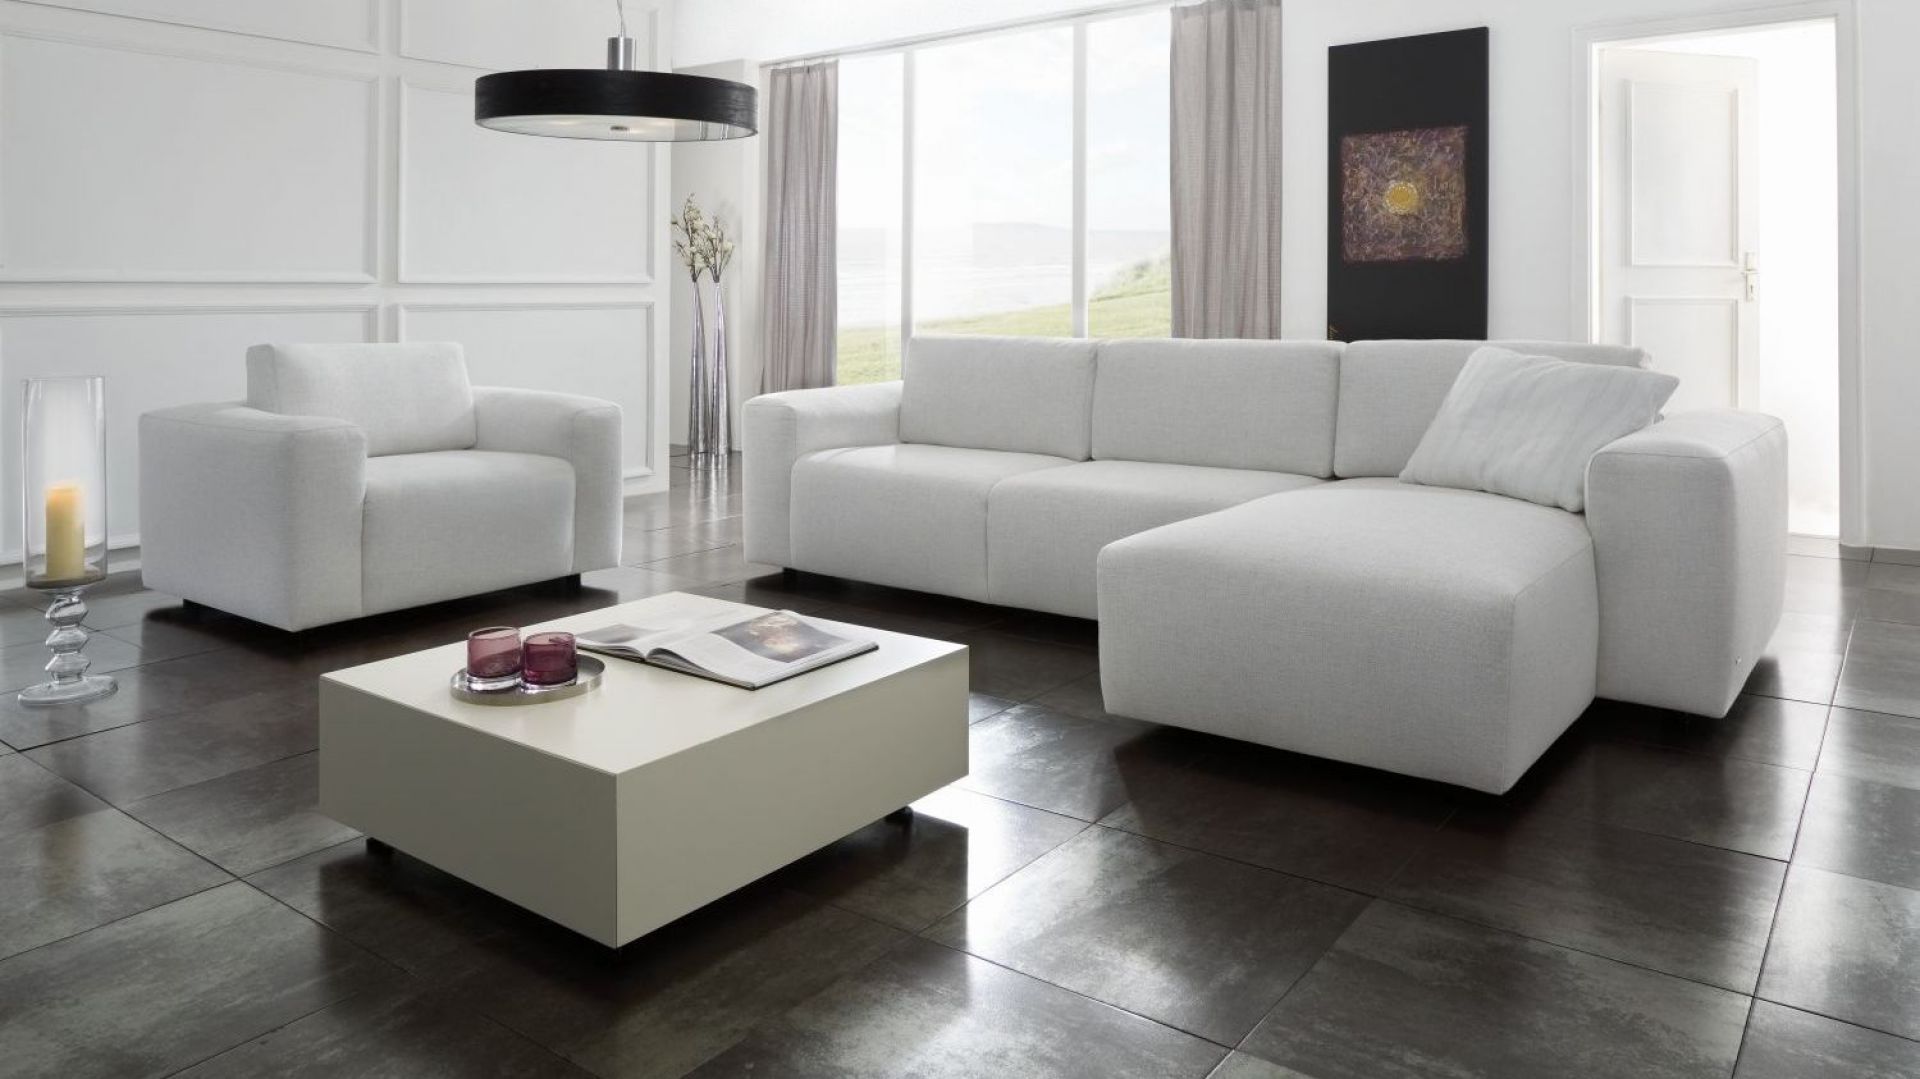 Salon z jasną lub białą sofą - zobacz ciekawe inspiracje!